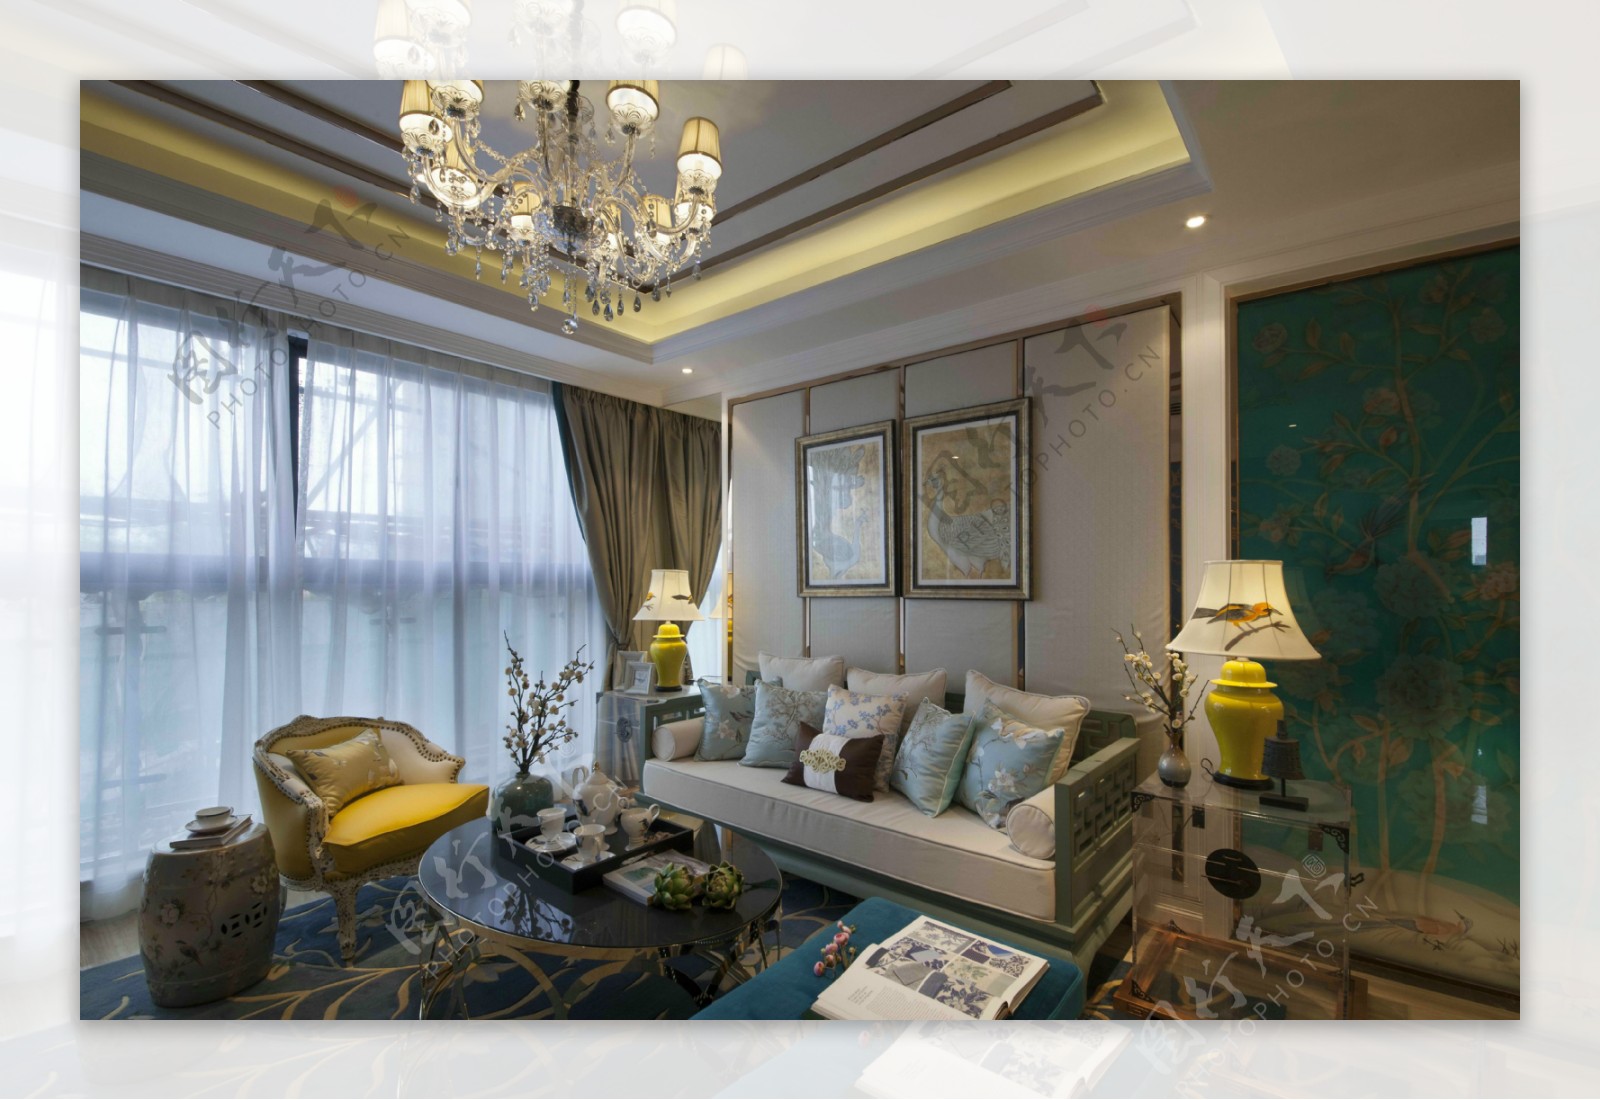 中式时尚室内客厅沙发效果图